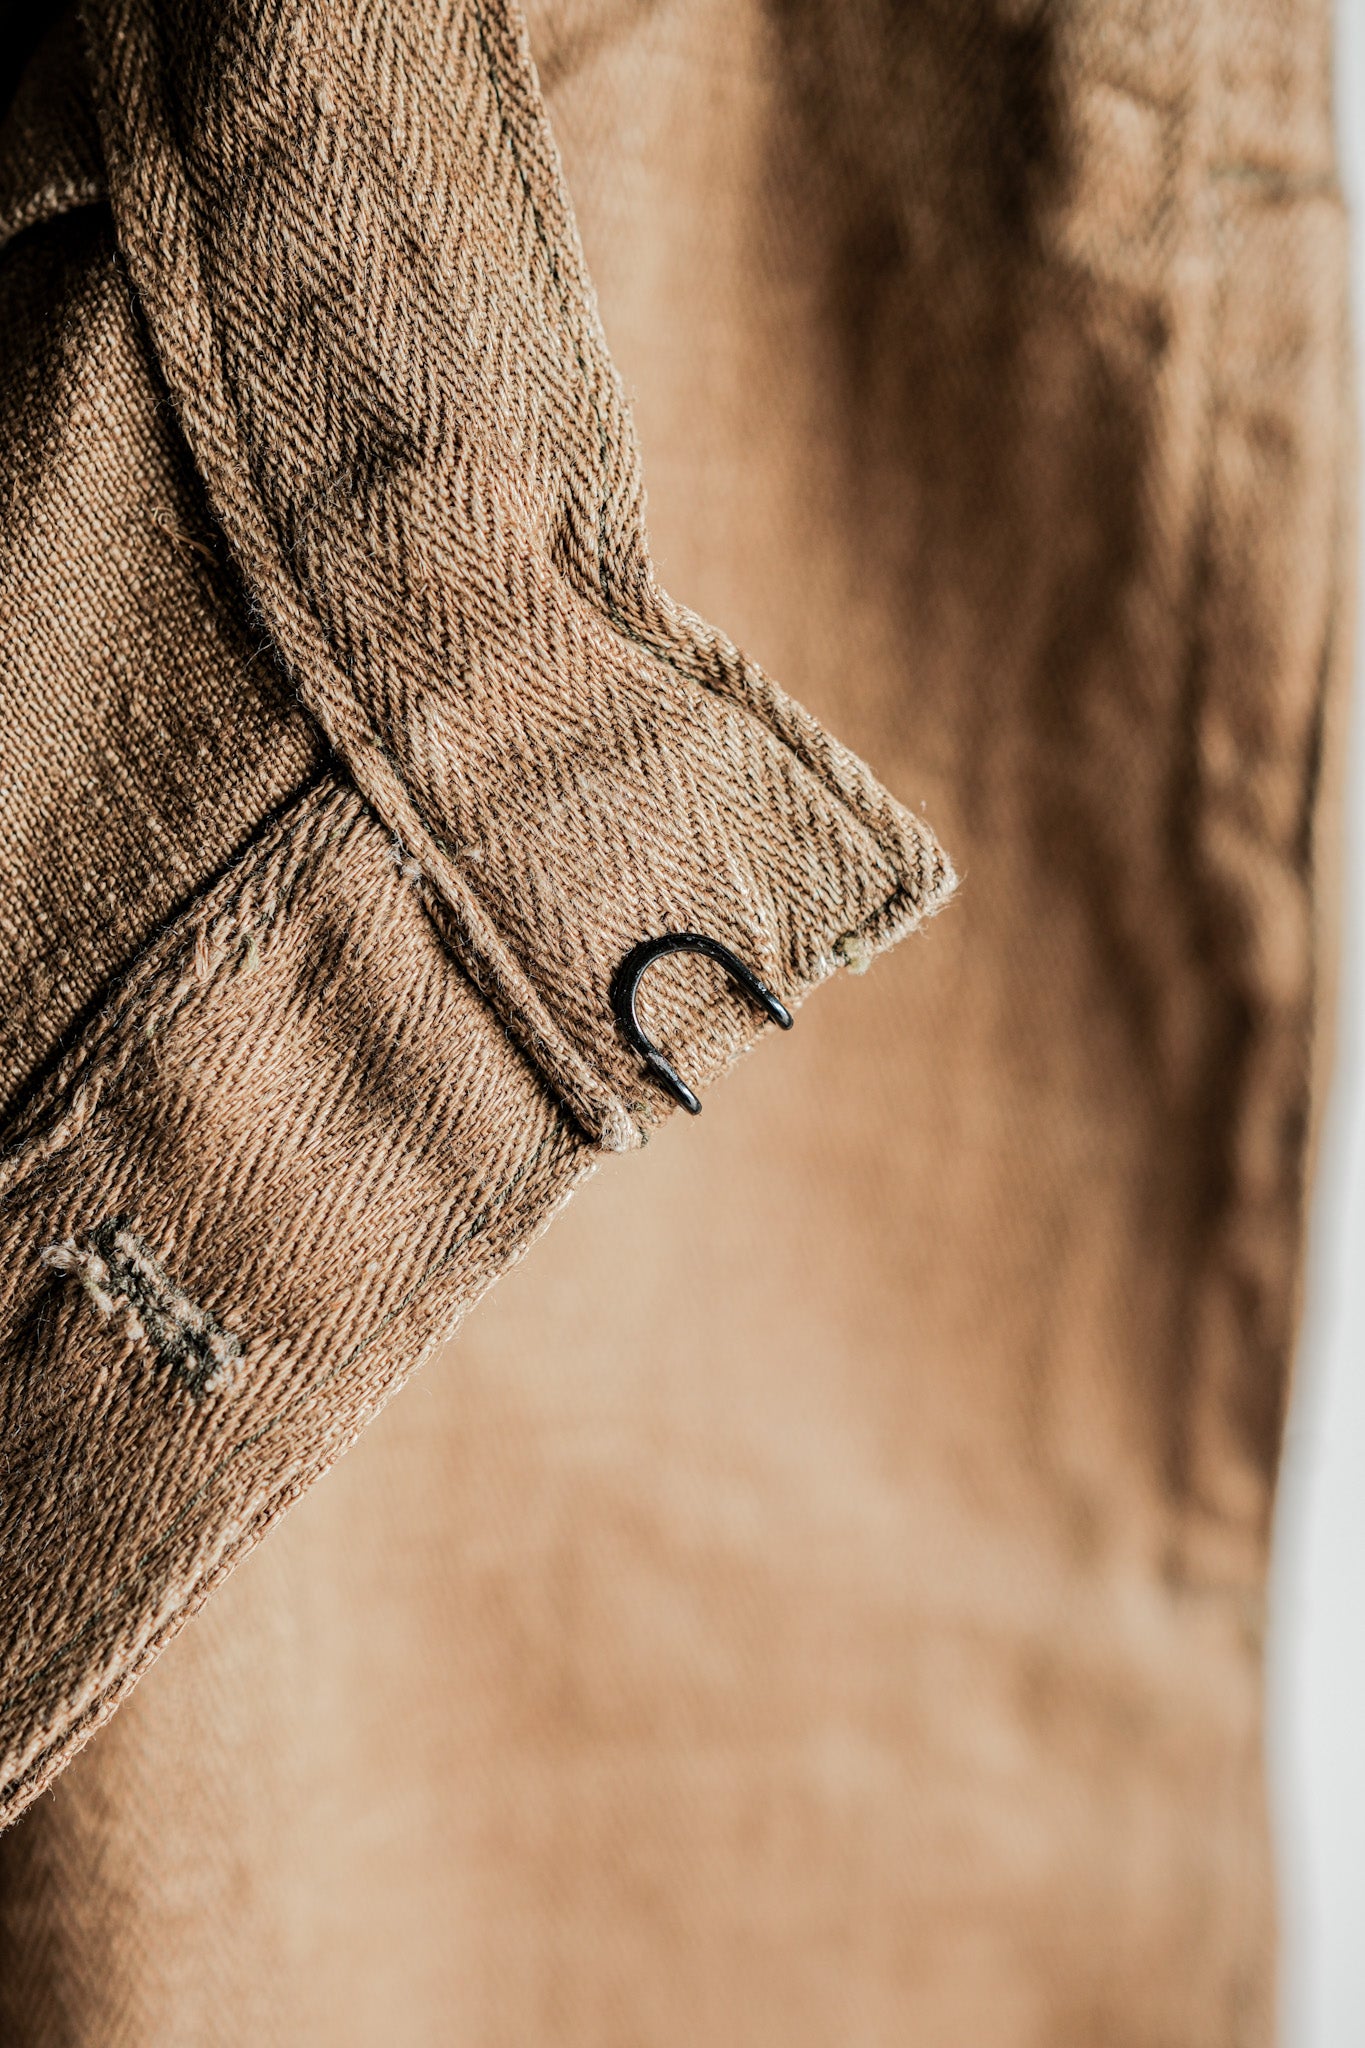 [〜40年代]wwⅱ德國軍隊Drillich HBT亞麻褲“不尋常的顏色”“ Wehrmacht”